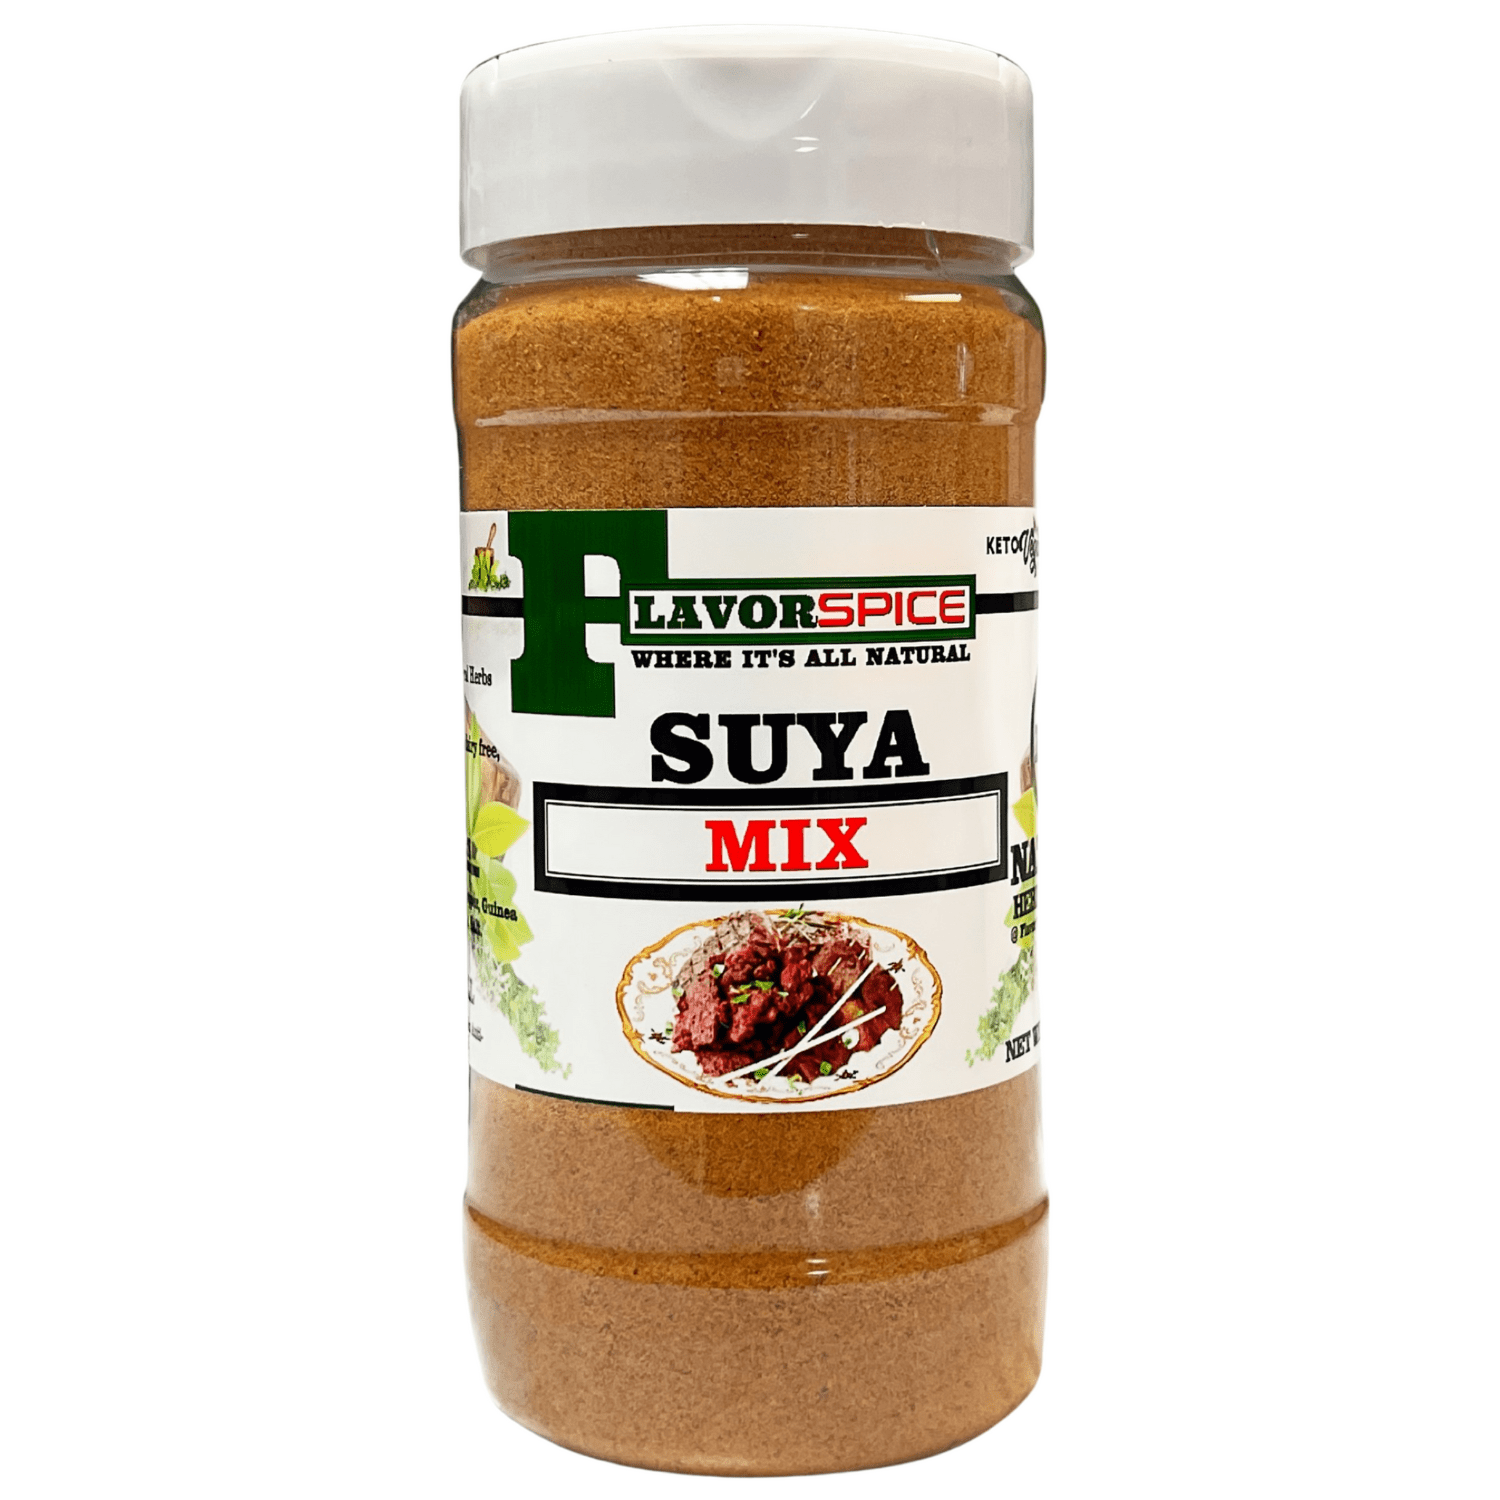 The Nigerian Suya Spice Mix - Immaculate Ruému